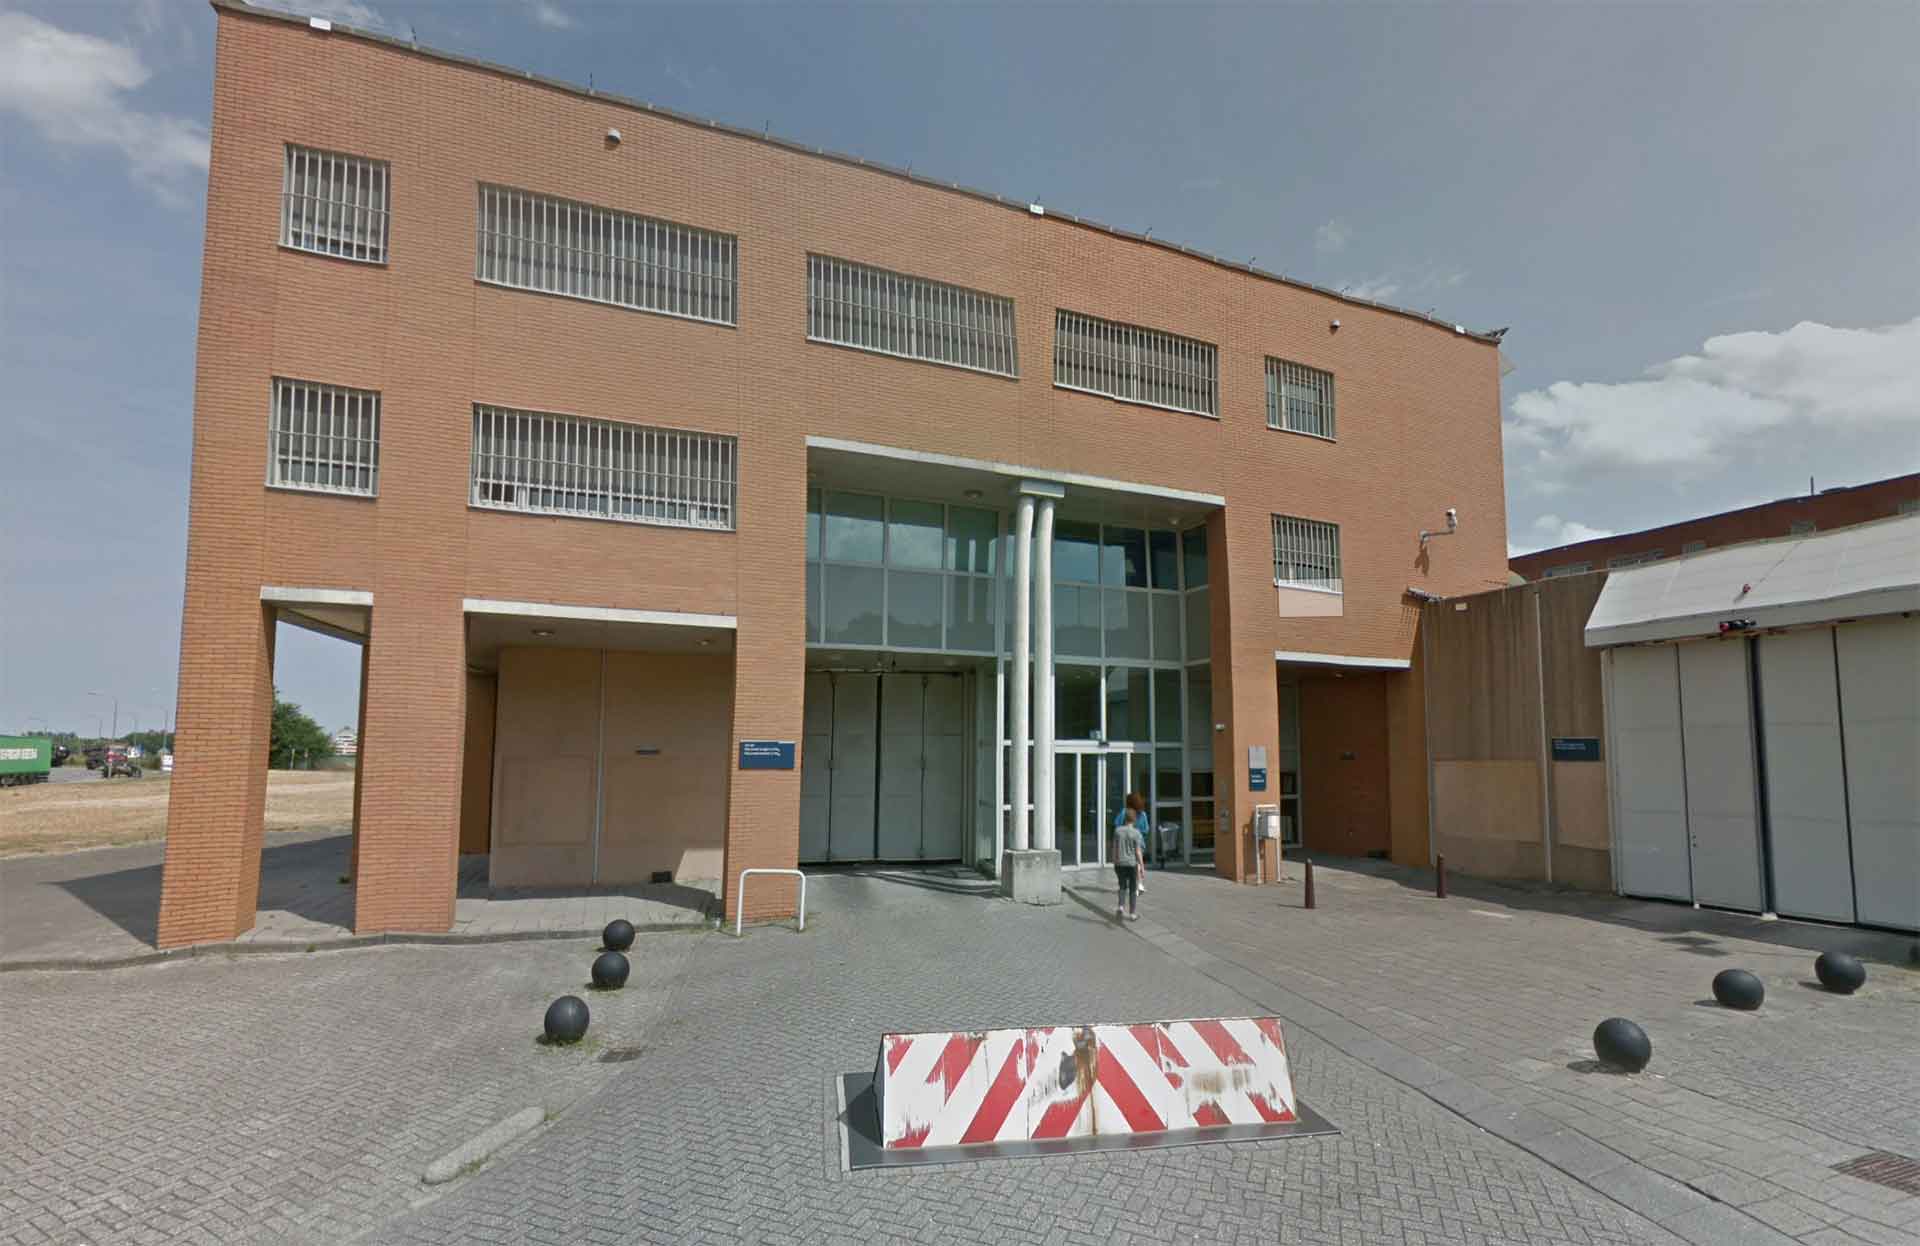 Institución penitenciaria PI Dordrecht - Weening Abogados Penalistas